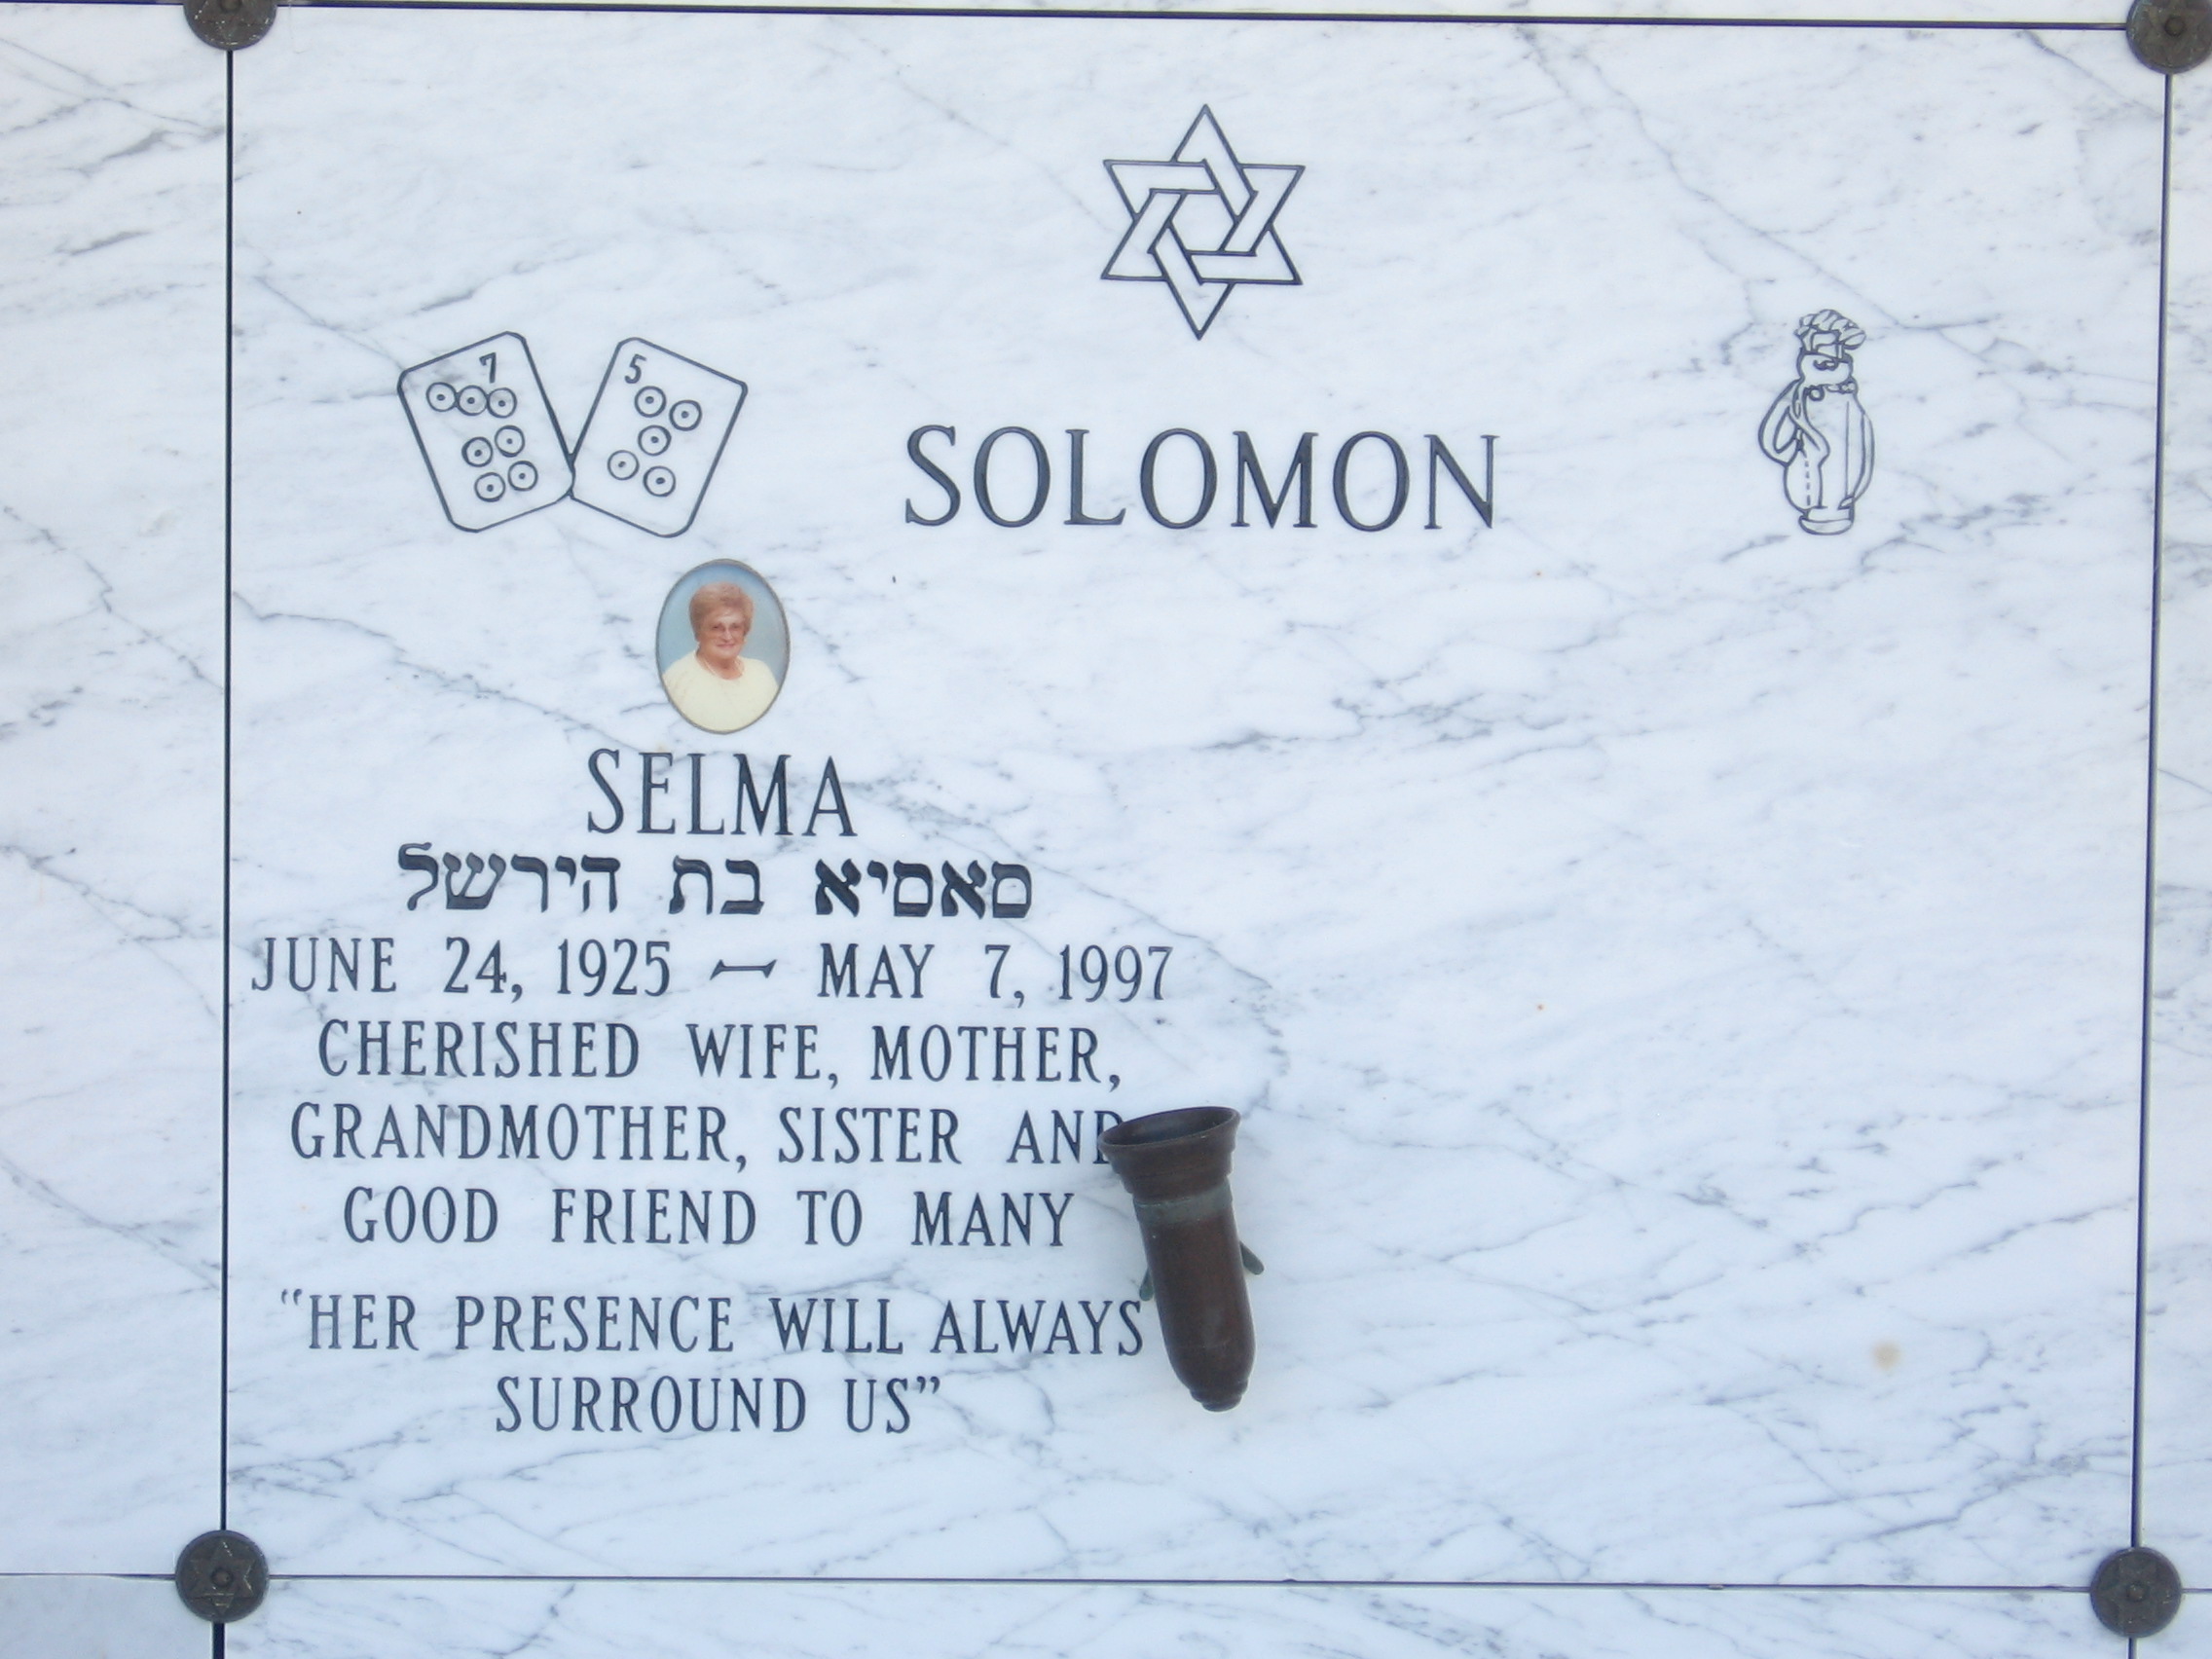 Selma Solomon